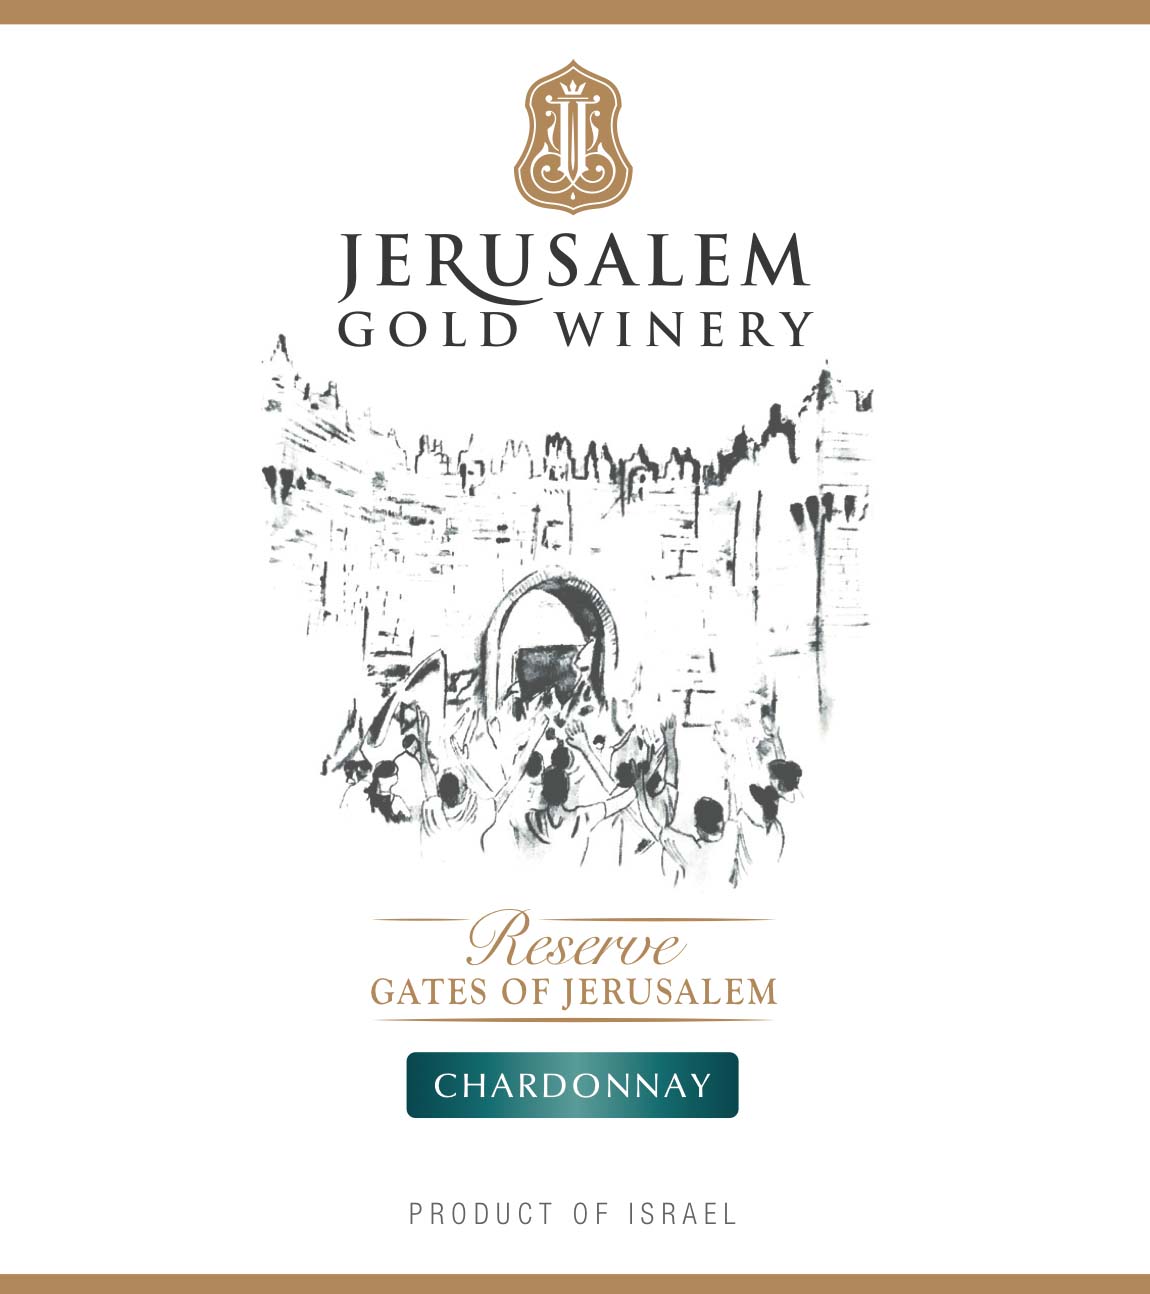 Gates of Jerusalem - Chardonnay label